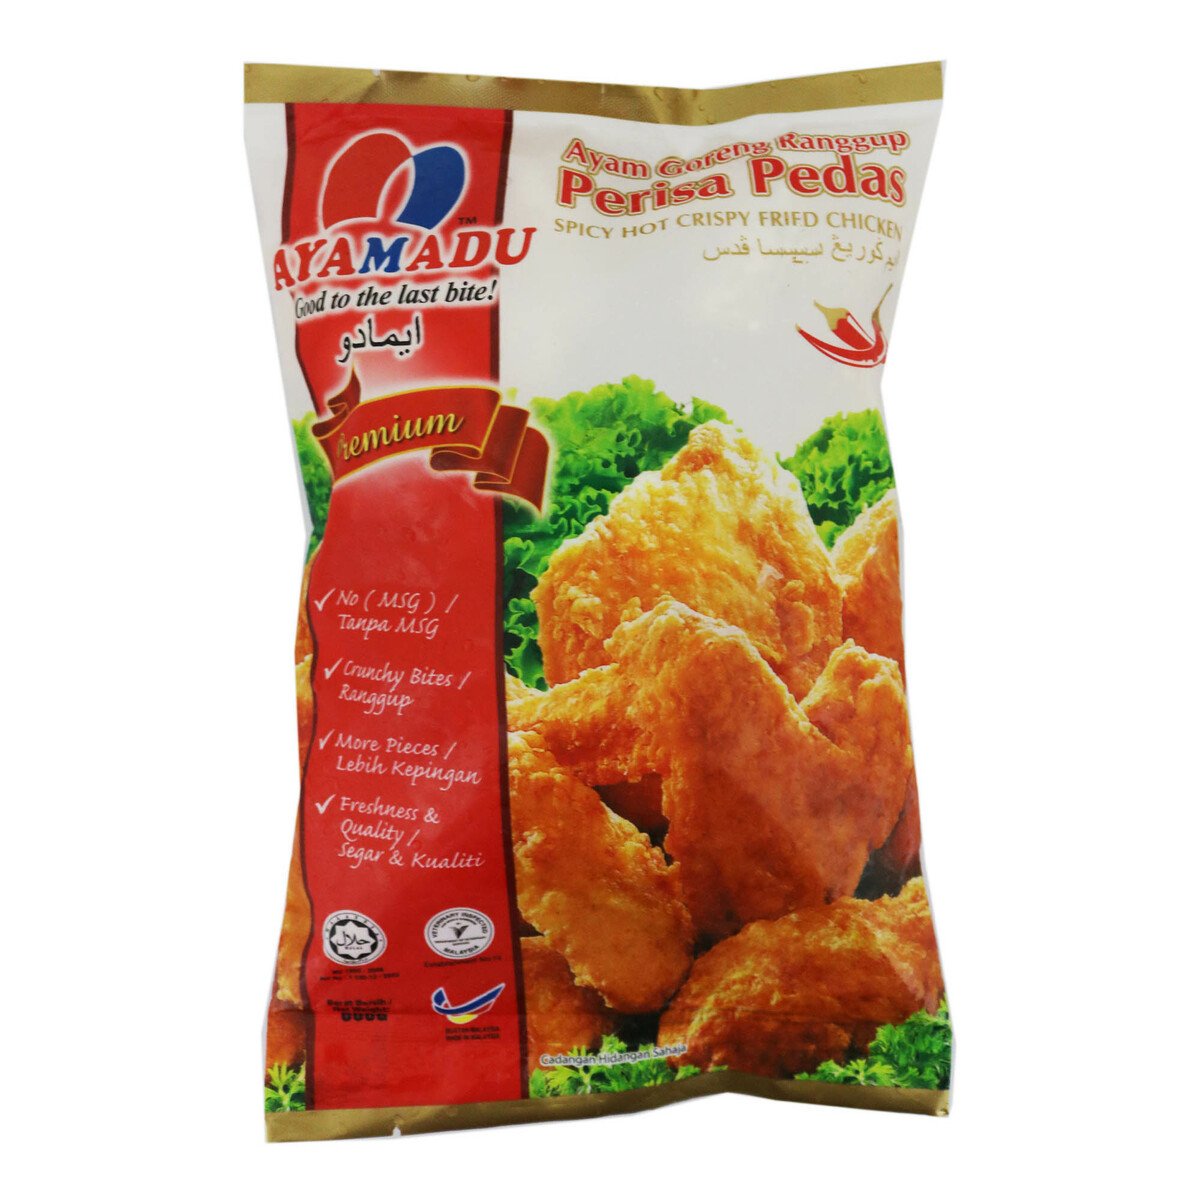 Ayamadu Hot & Spicy Fried Chicken 700g